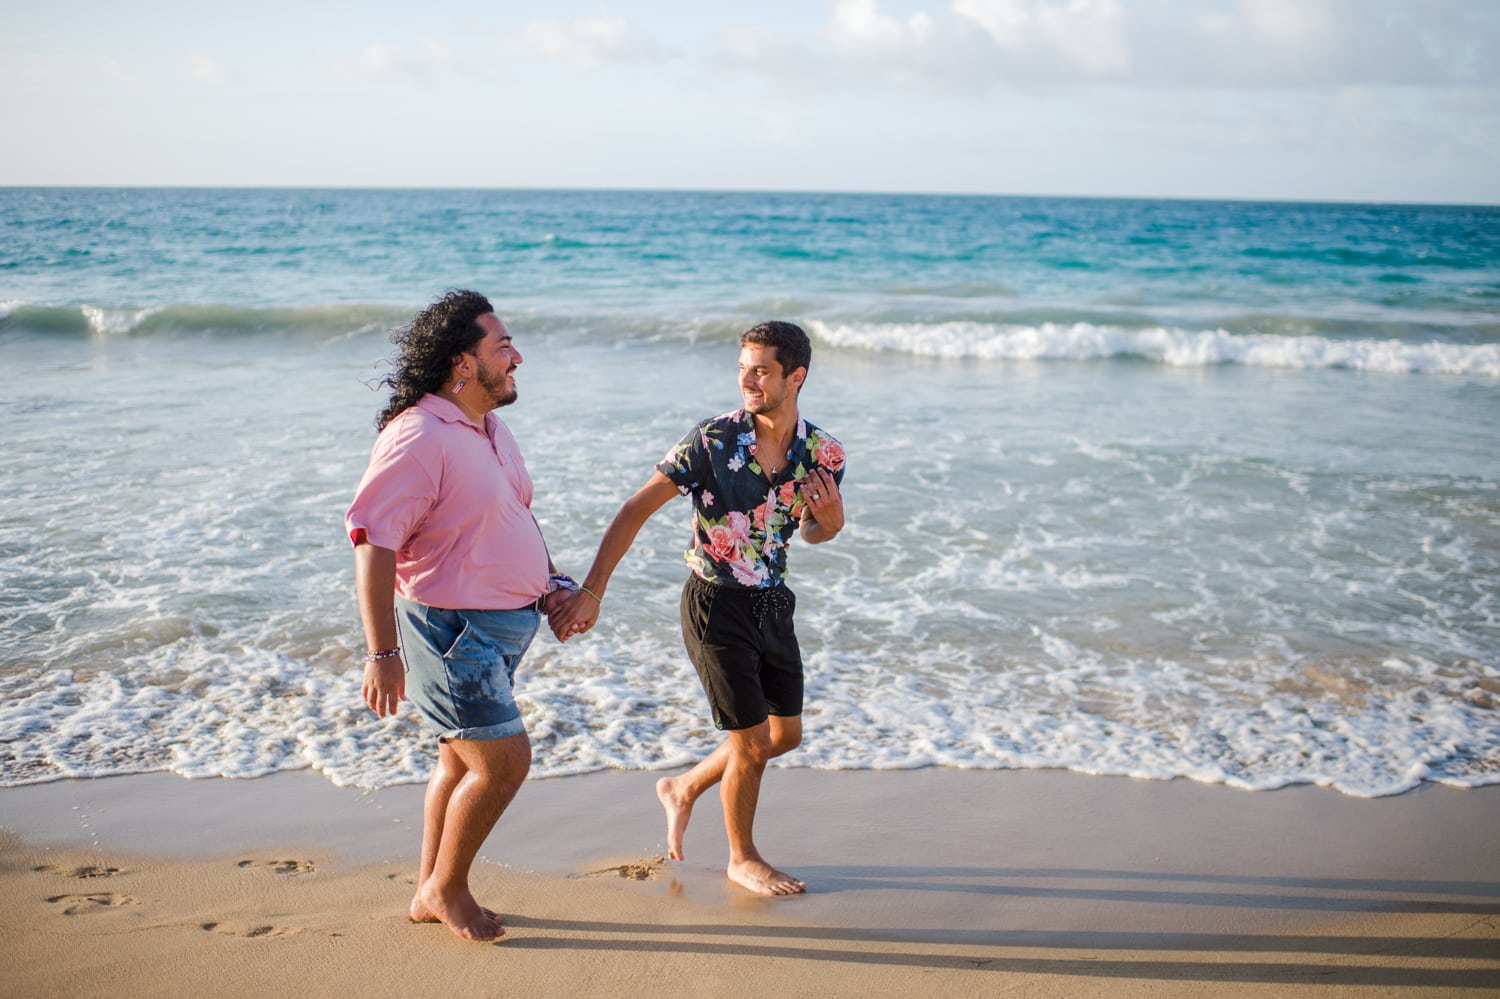 condado beach same sex gay marriage proposal photography puerto rico